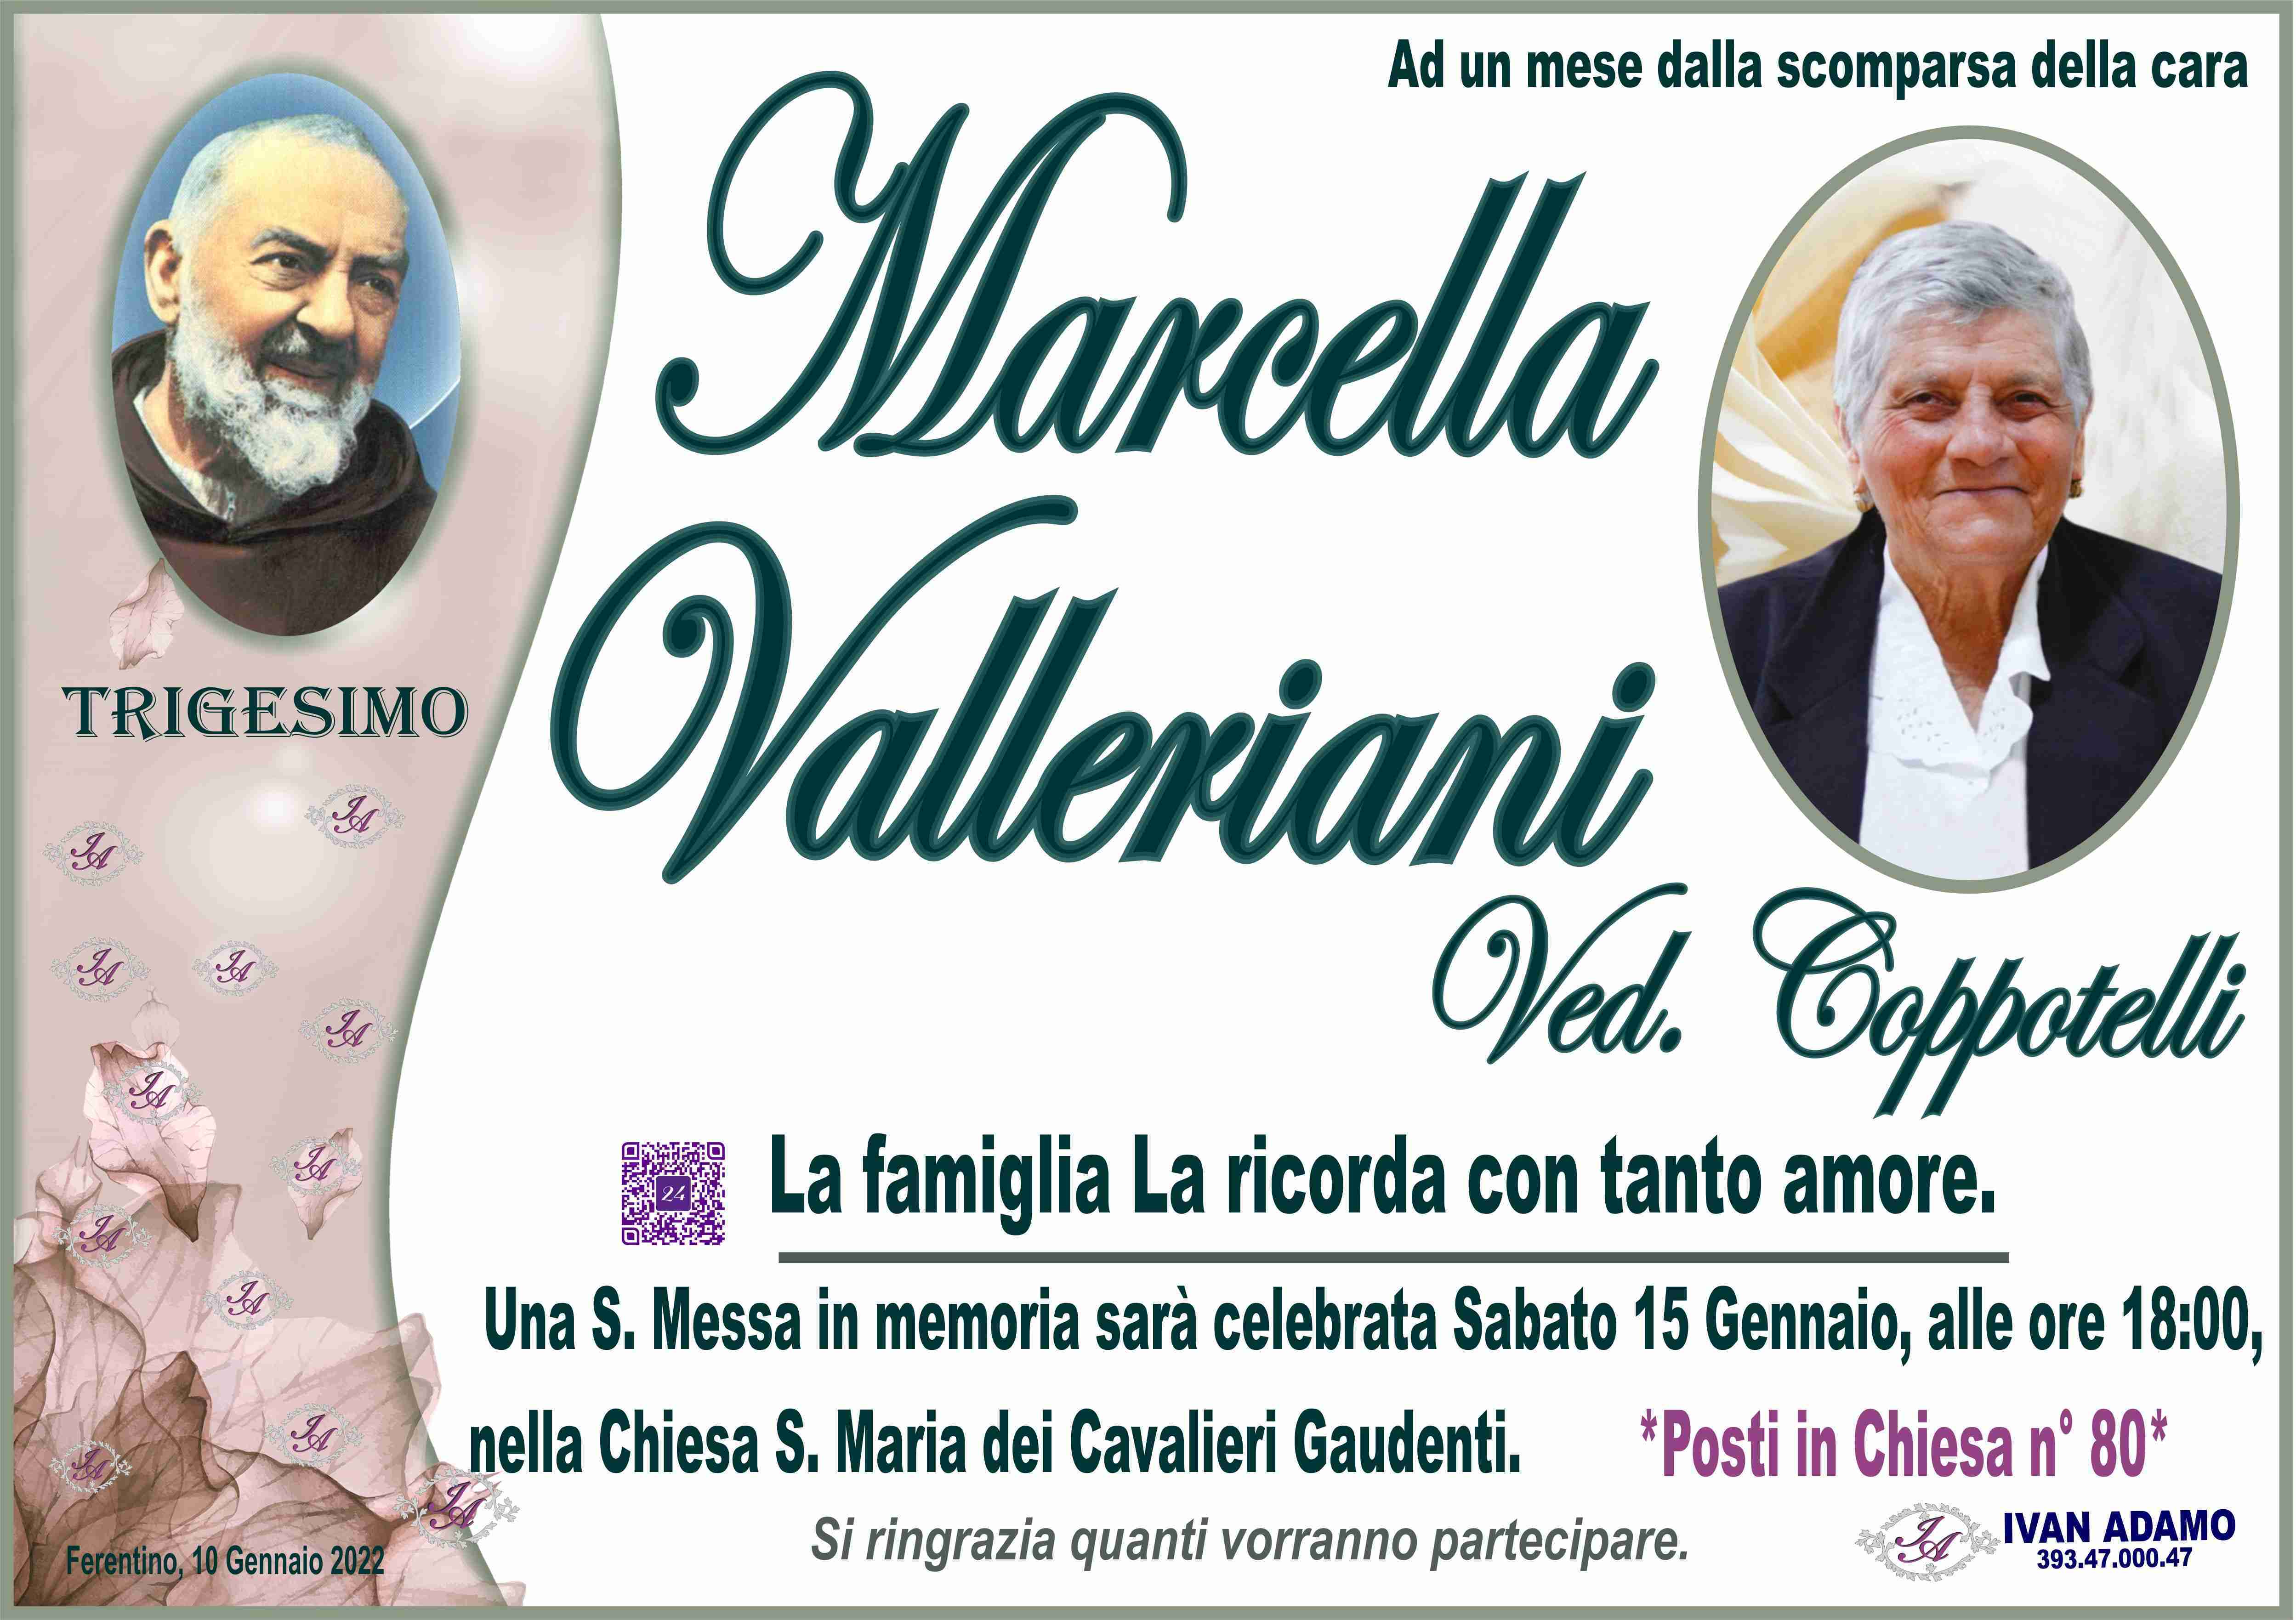 Marcella Valleriani